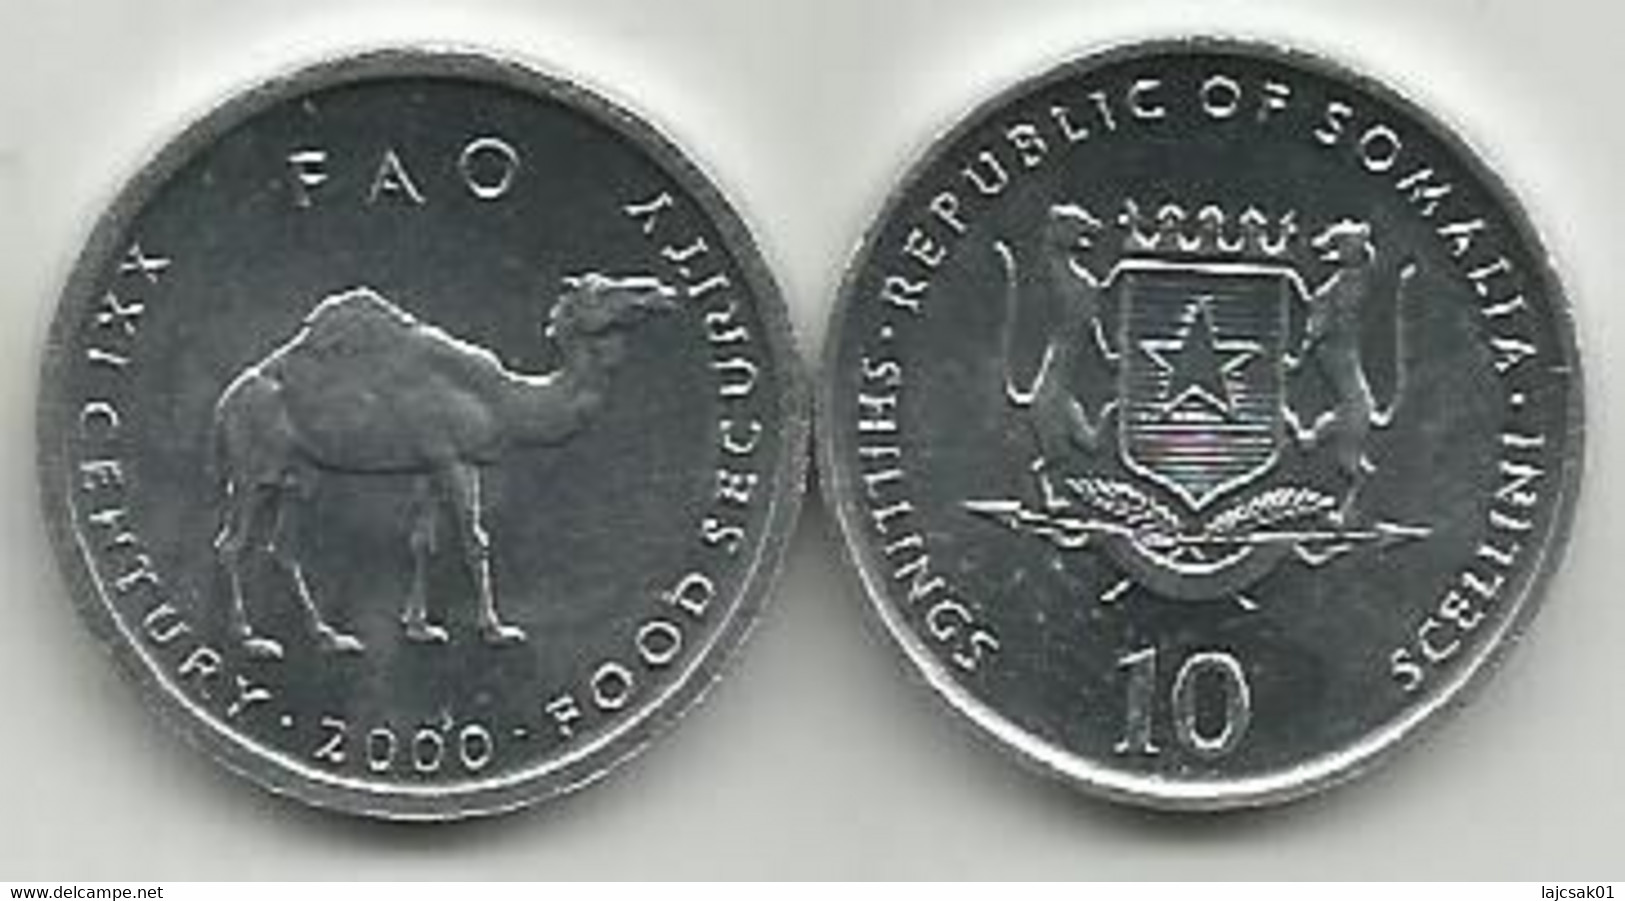 10 Scellini 2000. FAO High Grade - Somalia